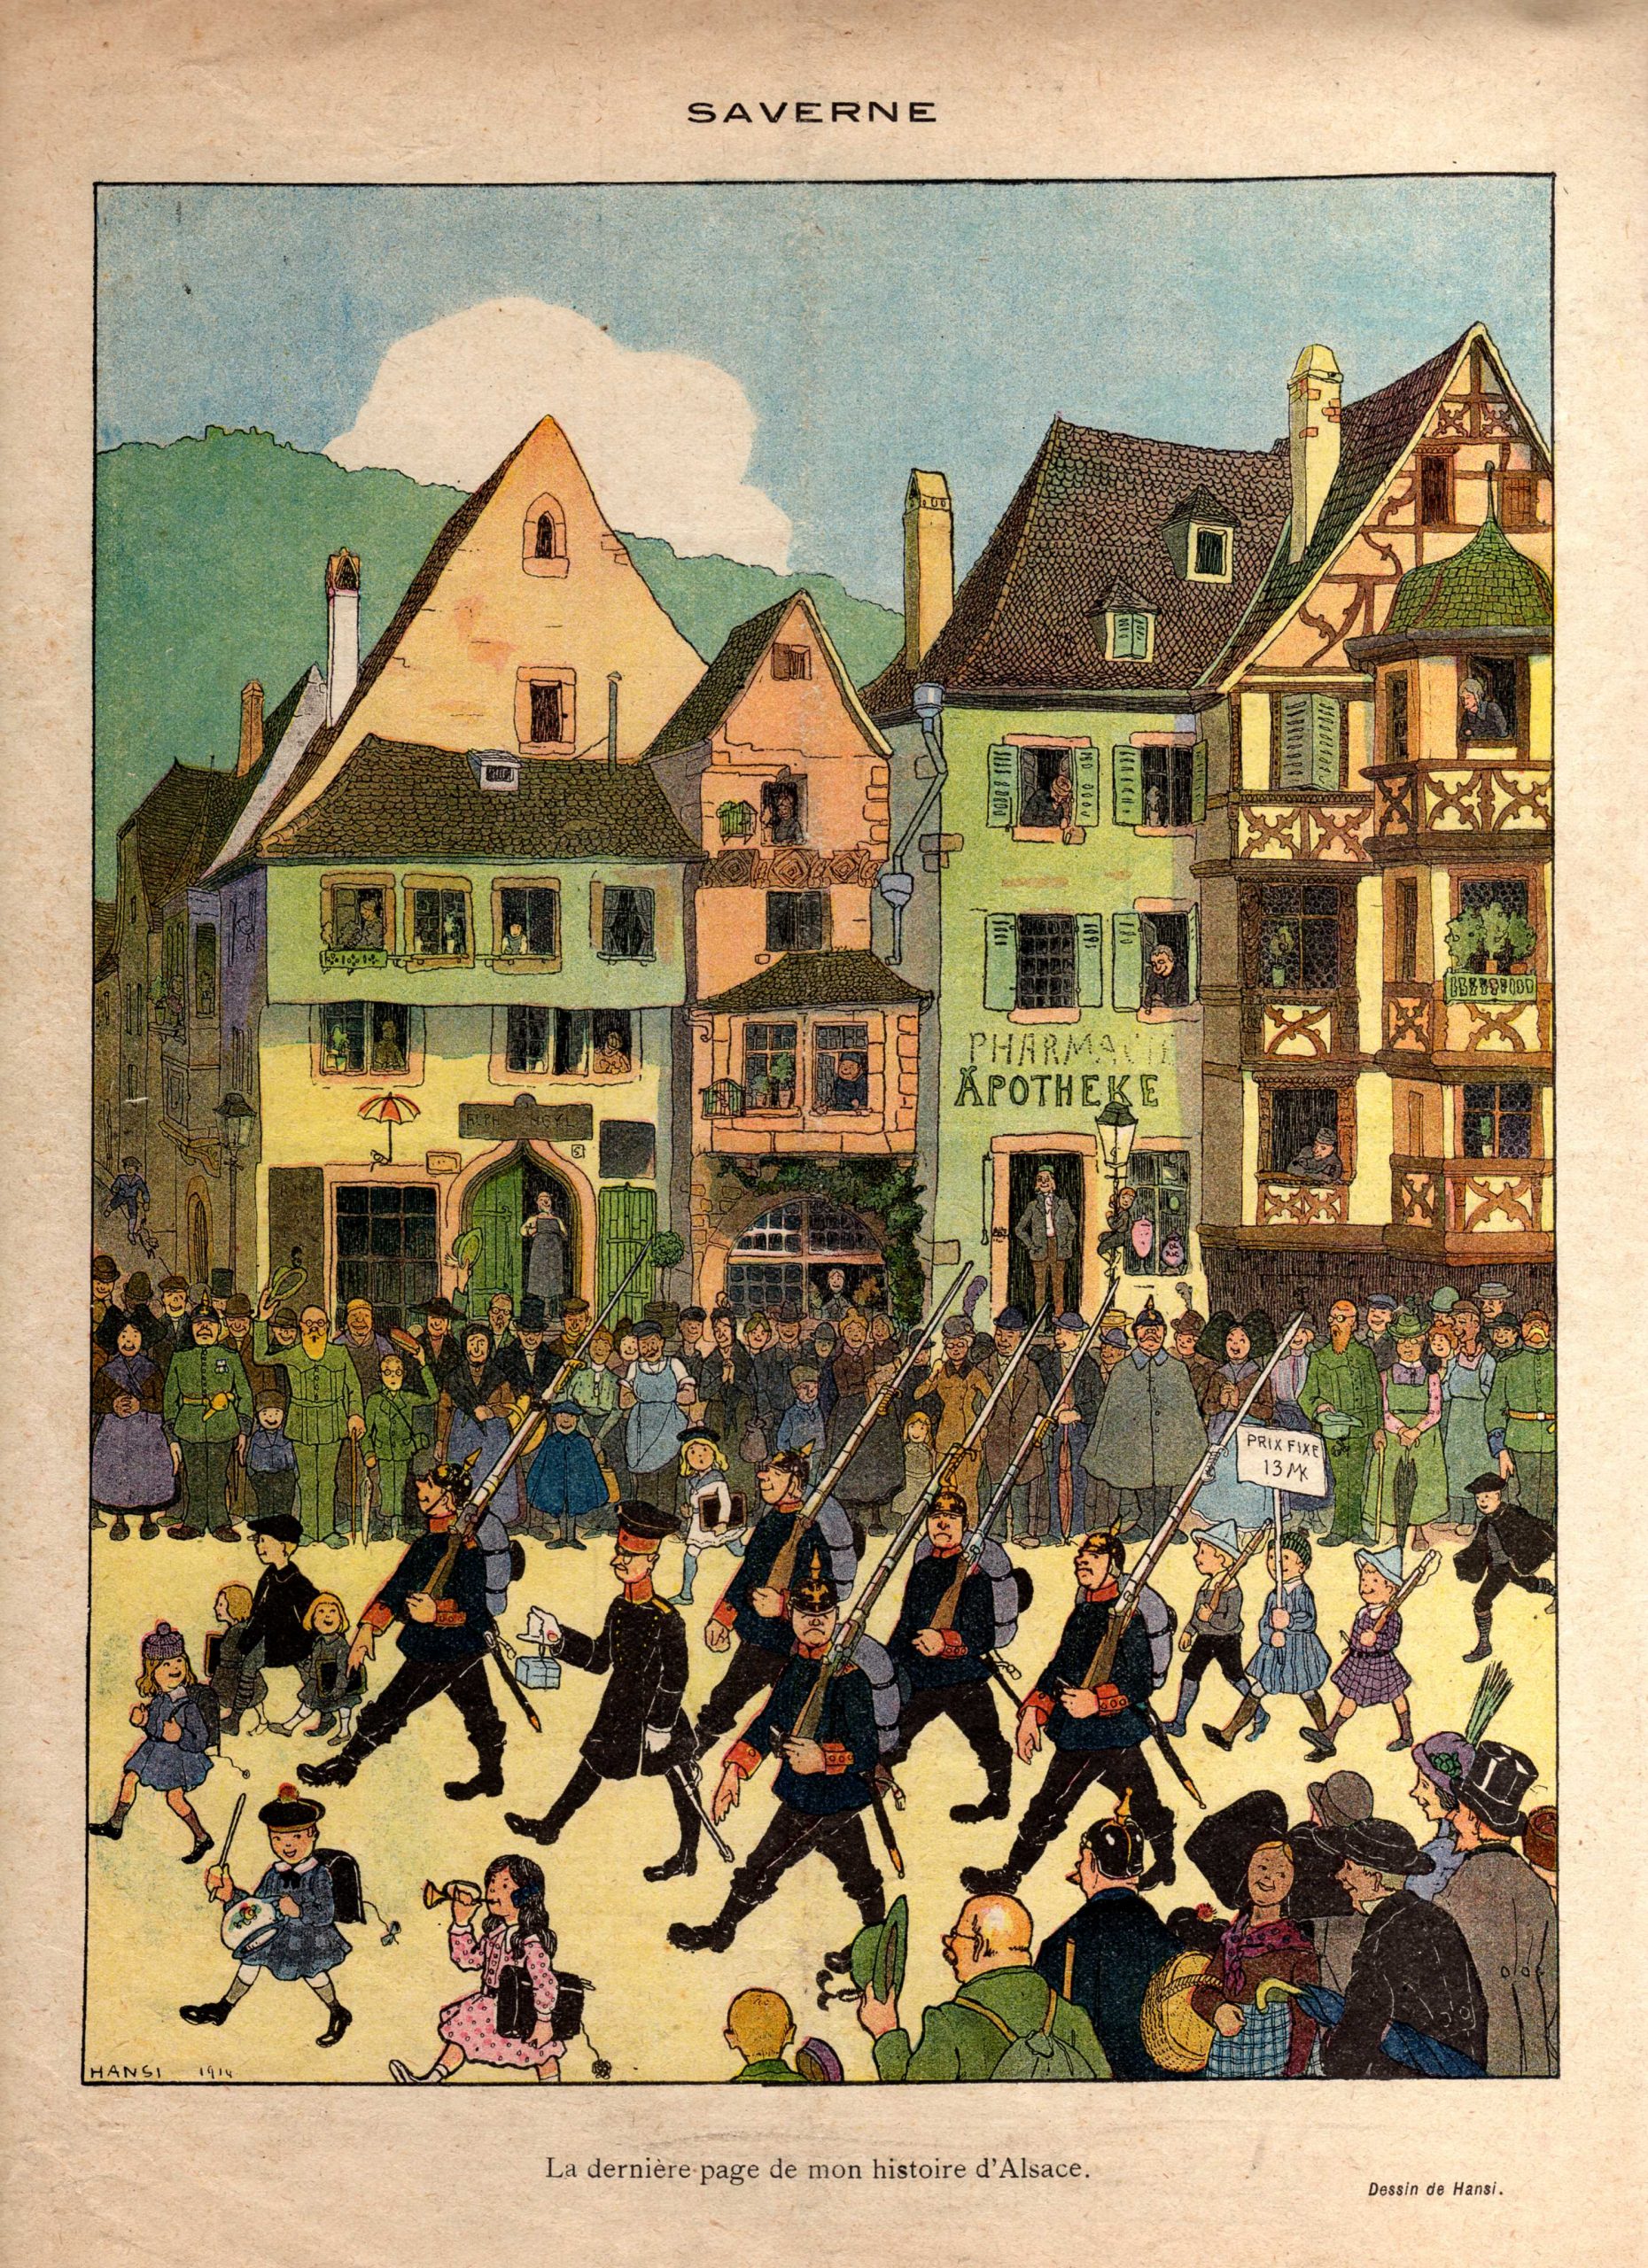 Conférence “Une Alsace rebelle. L’affaire de Saverne : les Wackes contre le lieutenant prussien (1913-1914)”